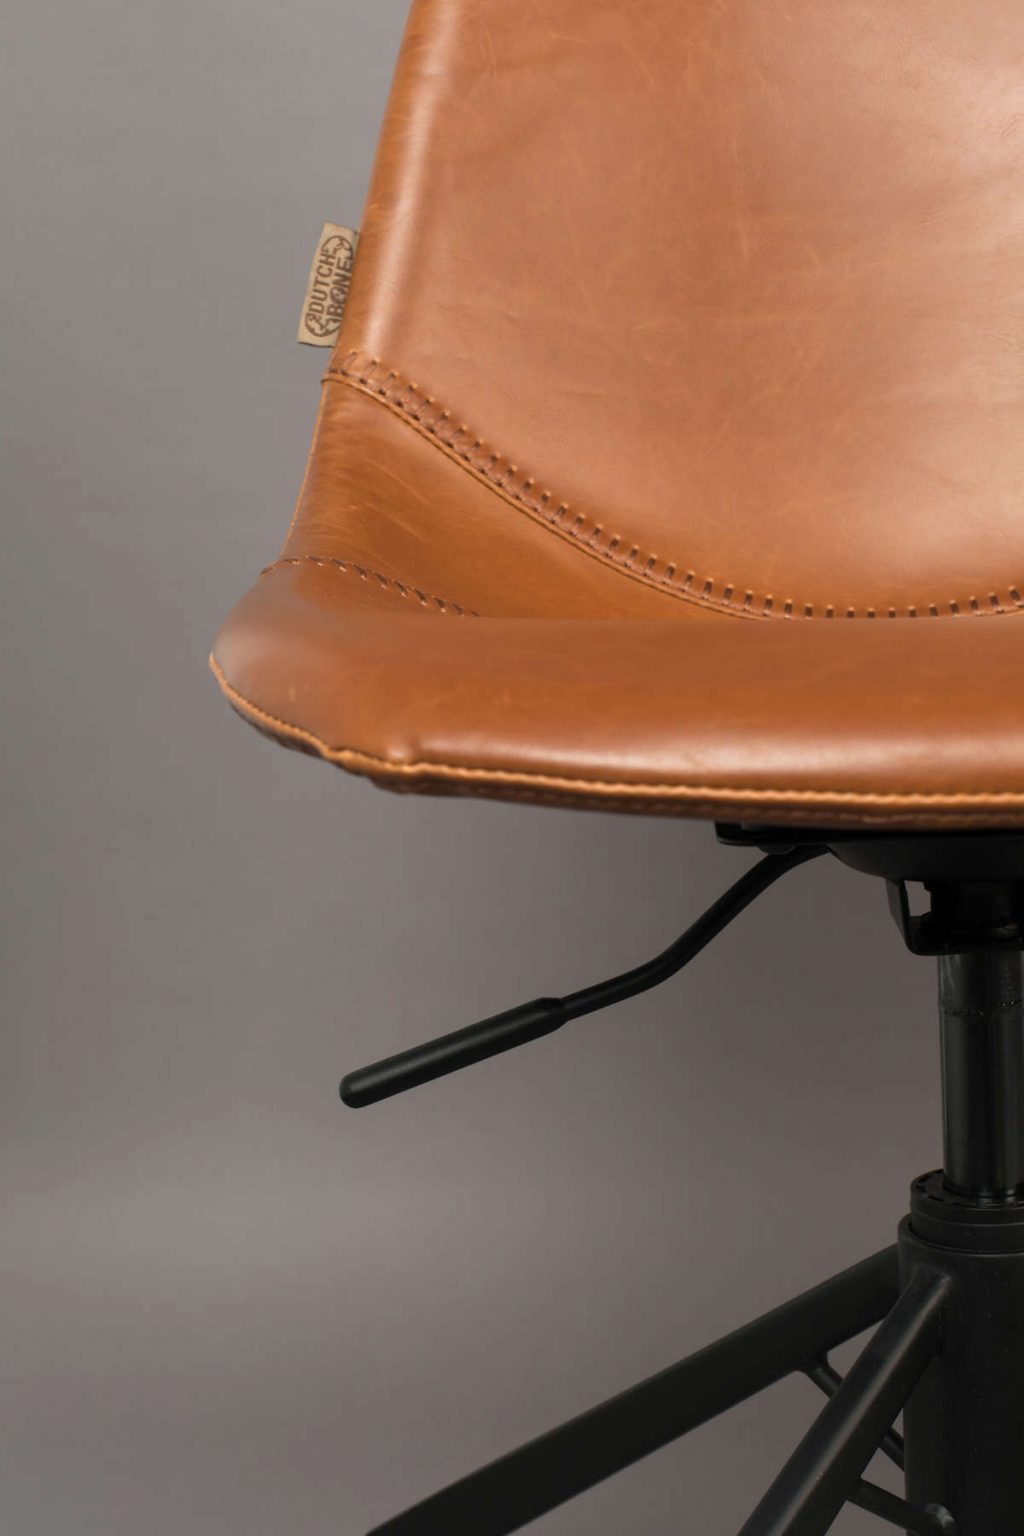 Krzesło biurowe Franky brązowe